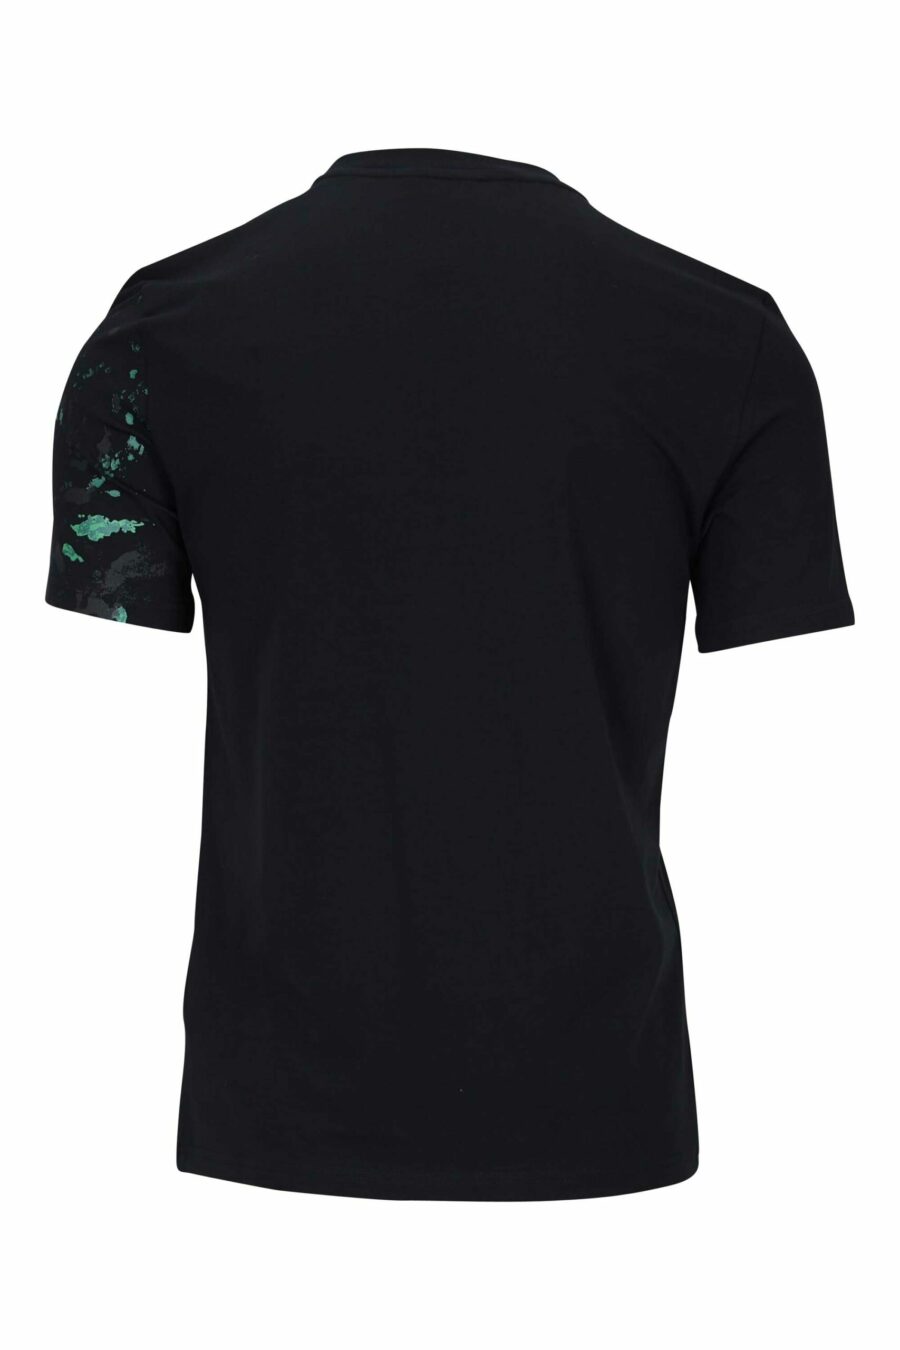 Schwarzes T-Shirt mit Minilogo "couture milano" mit mehrfarbigem "splash" - 667113392721 1 skaliert